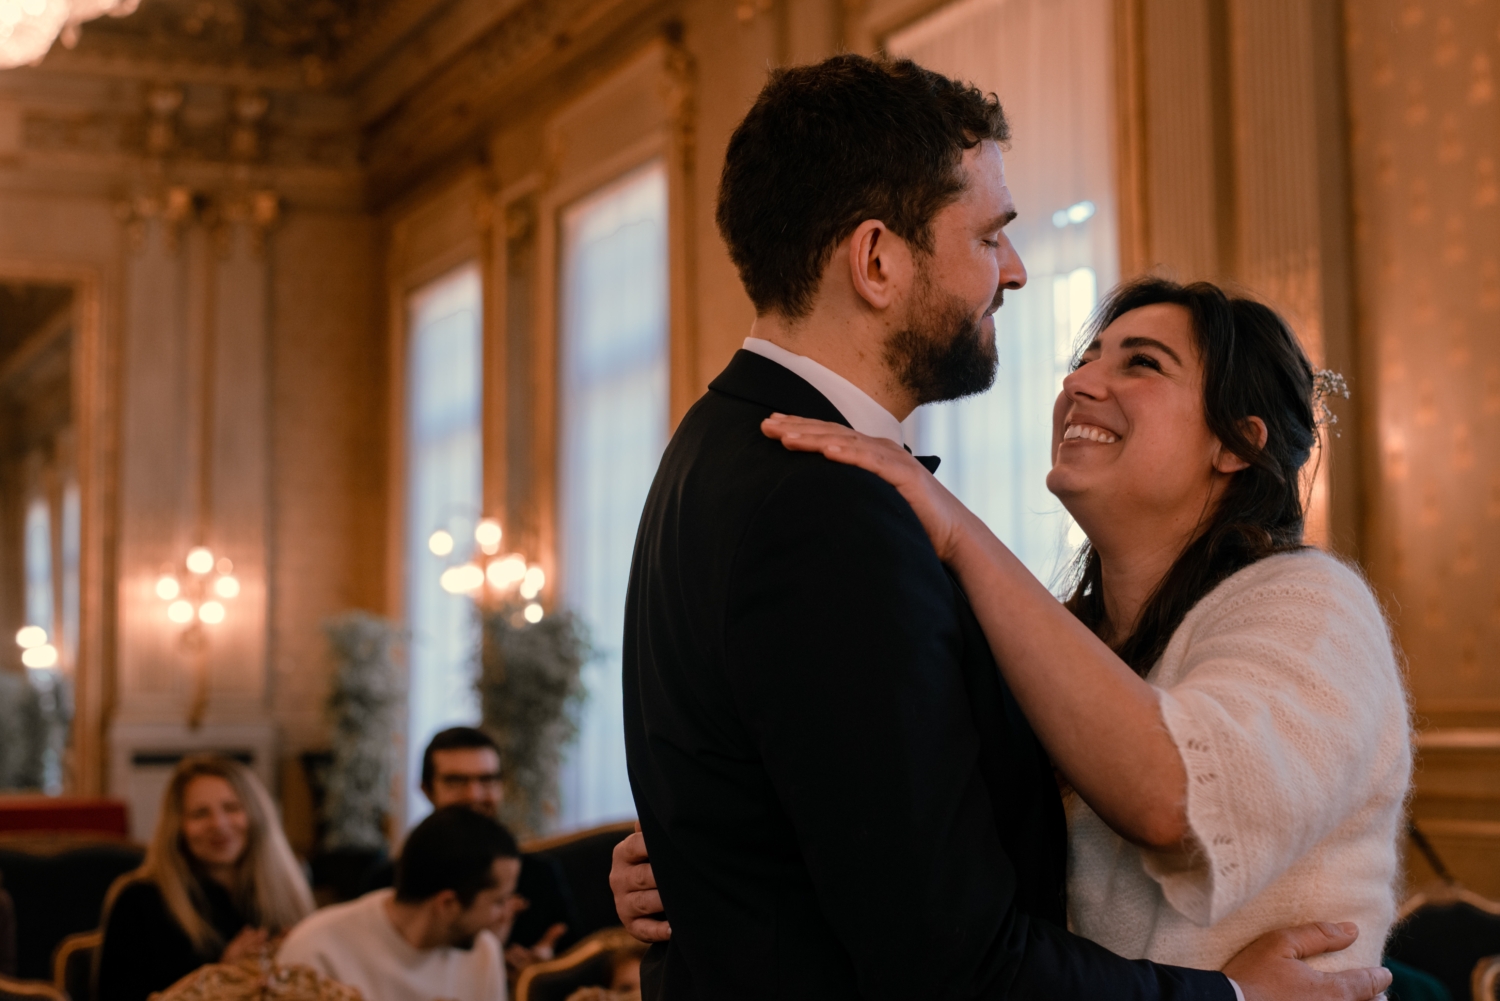 Cérémonie civile à la mairie de Rennes pour un mariage d'hiver